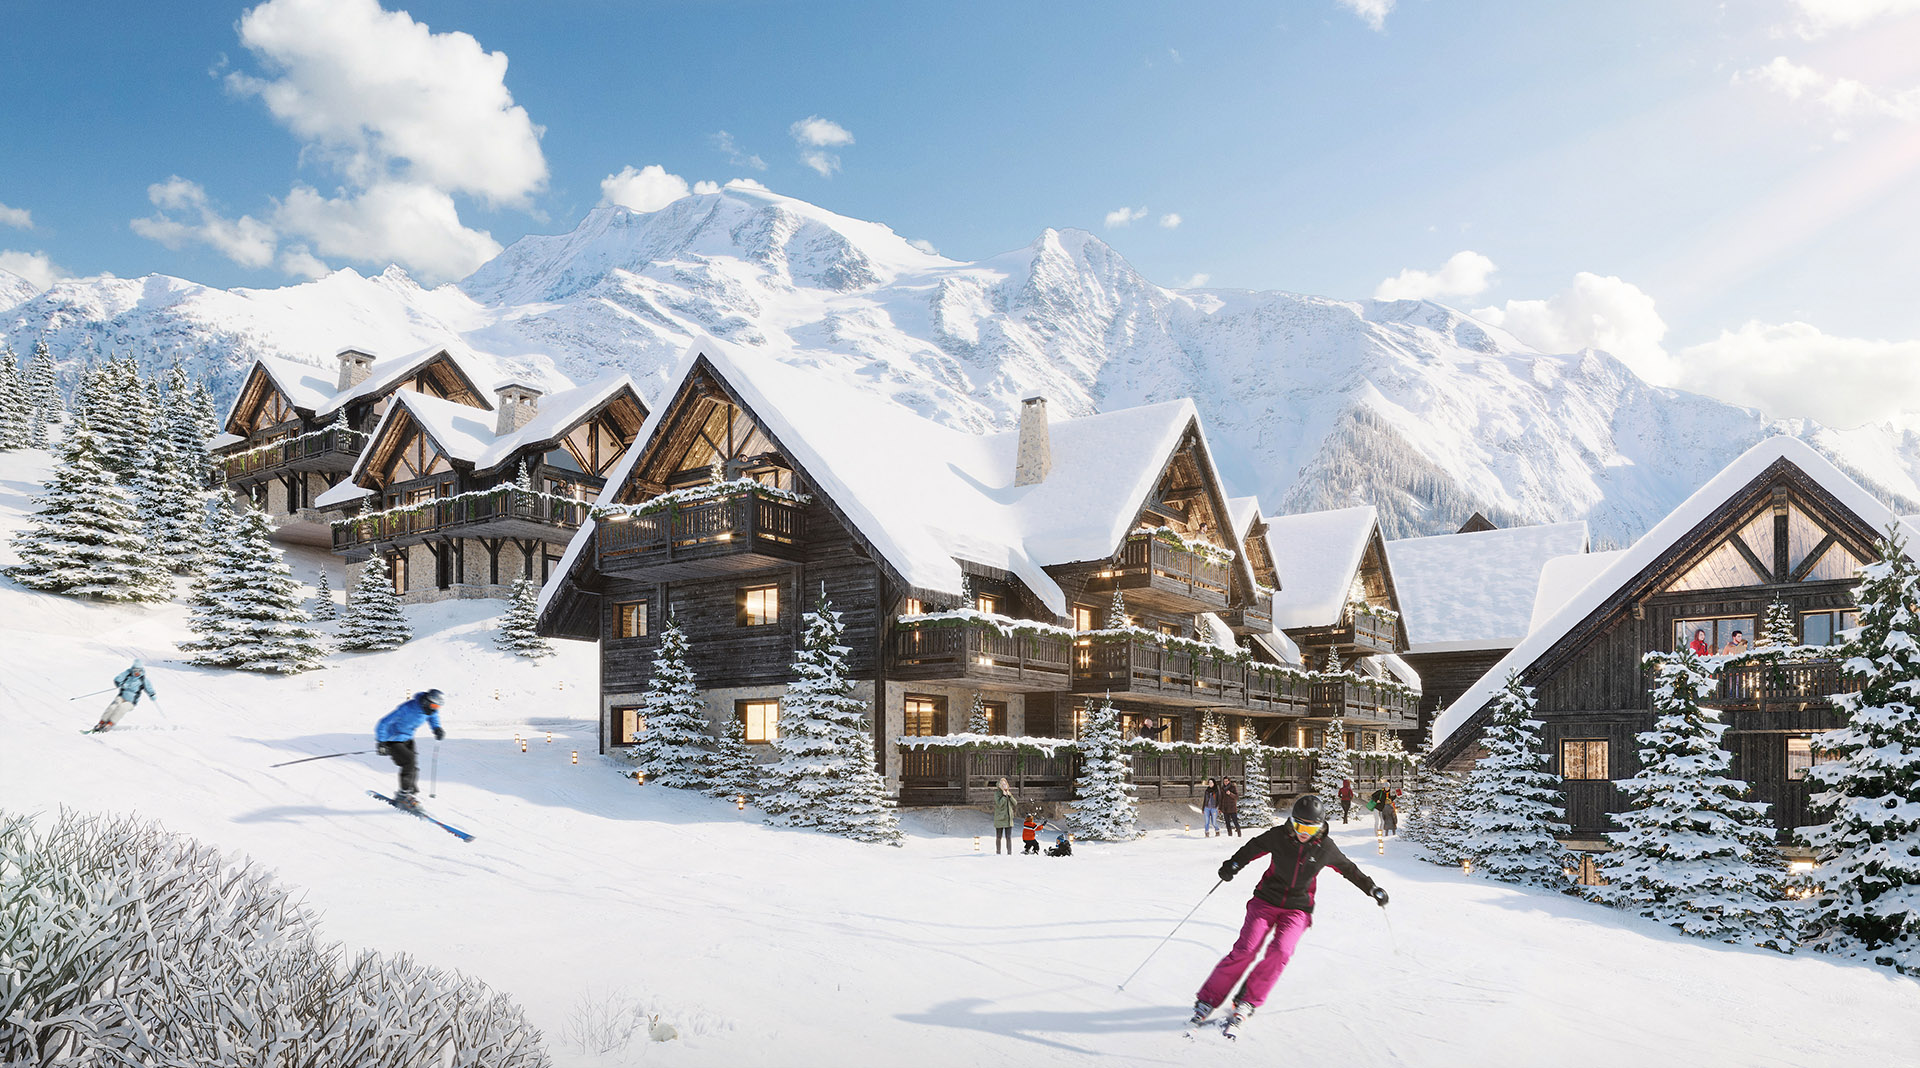 Image de synthèse 3D d'une piste de ski et de chalets en hiver